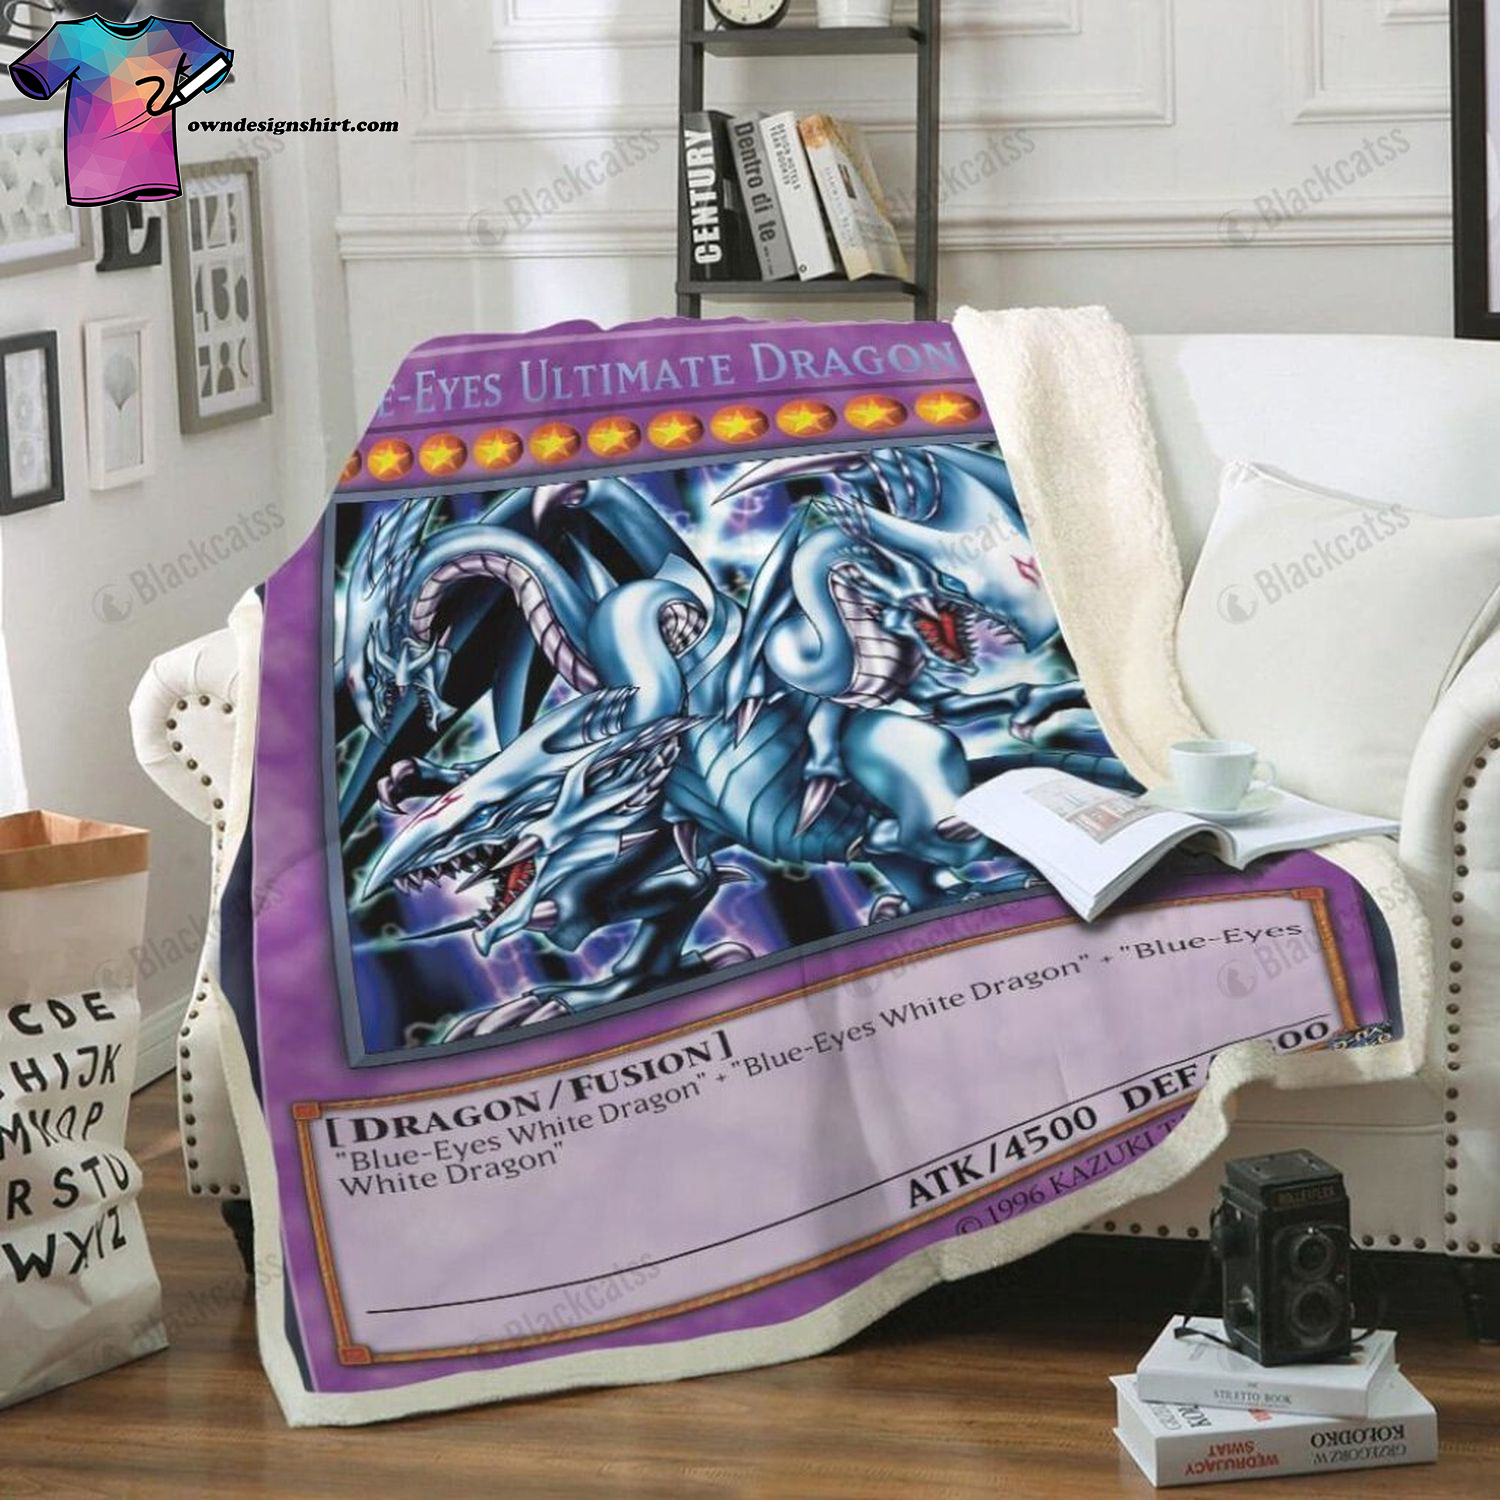 Game Yu-gi-oh Blue-Eyes Ultimate White Dragon Card Full Print Soft Blanket